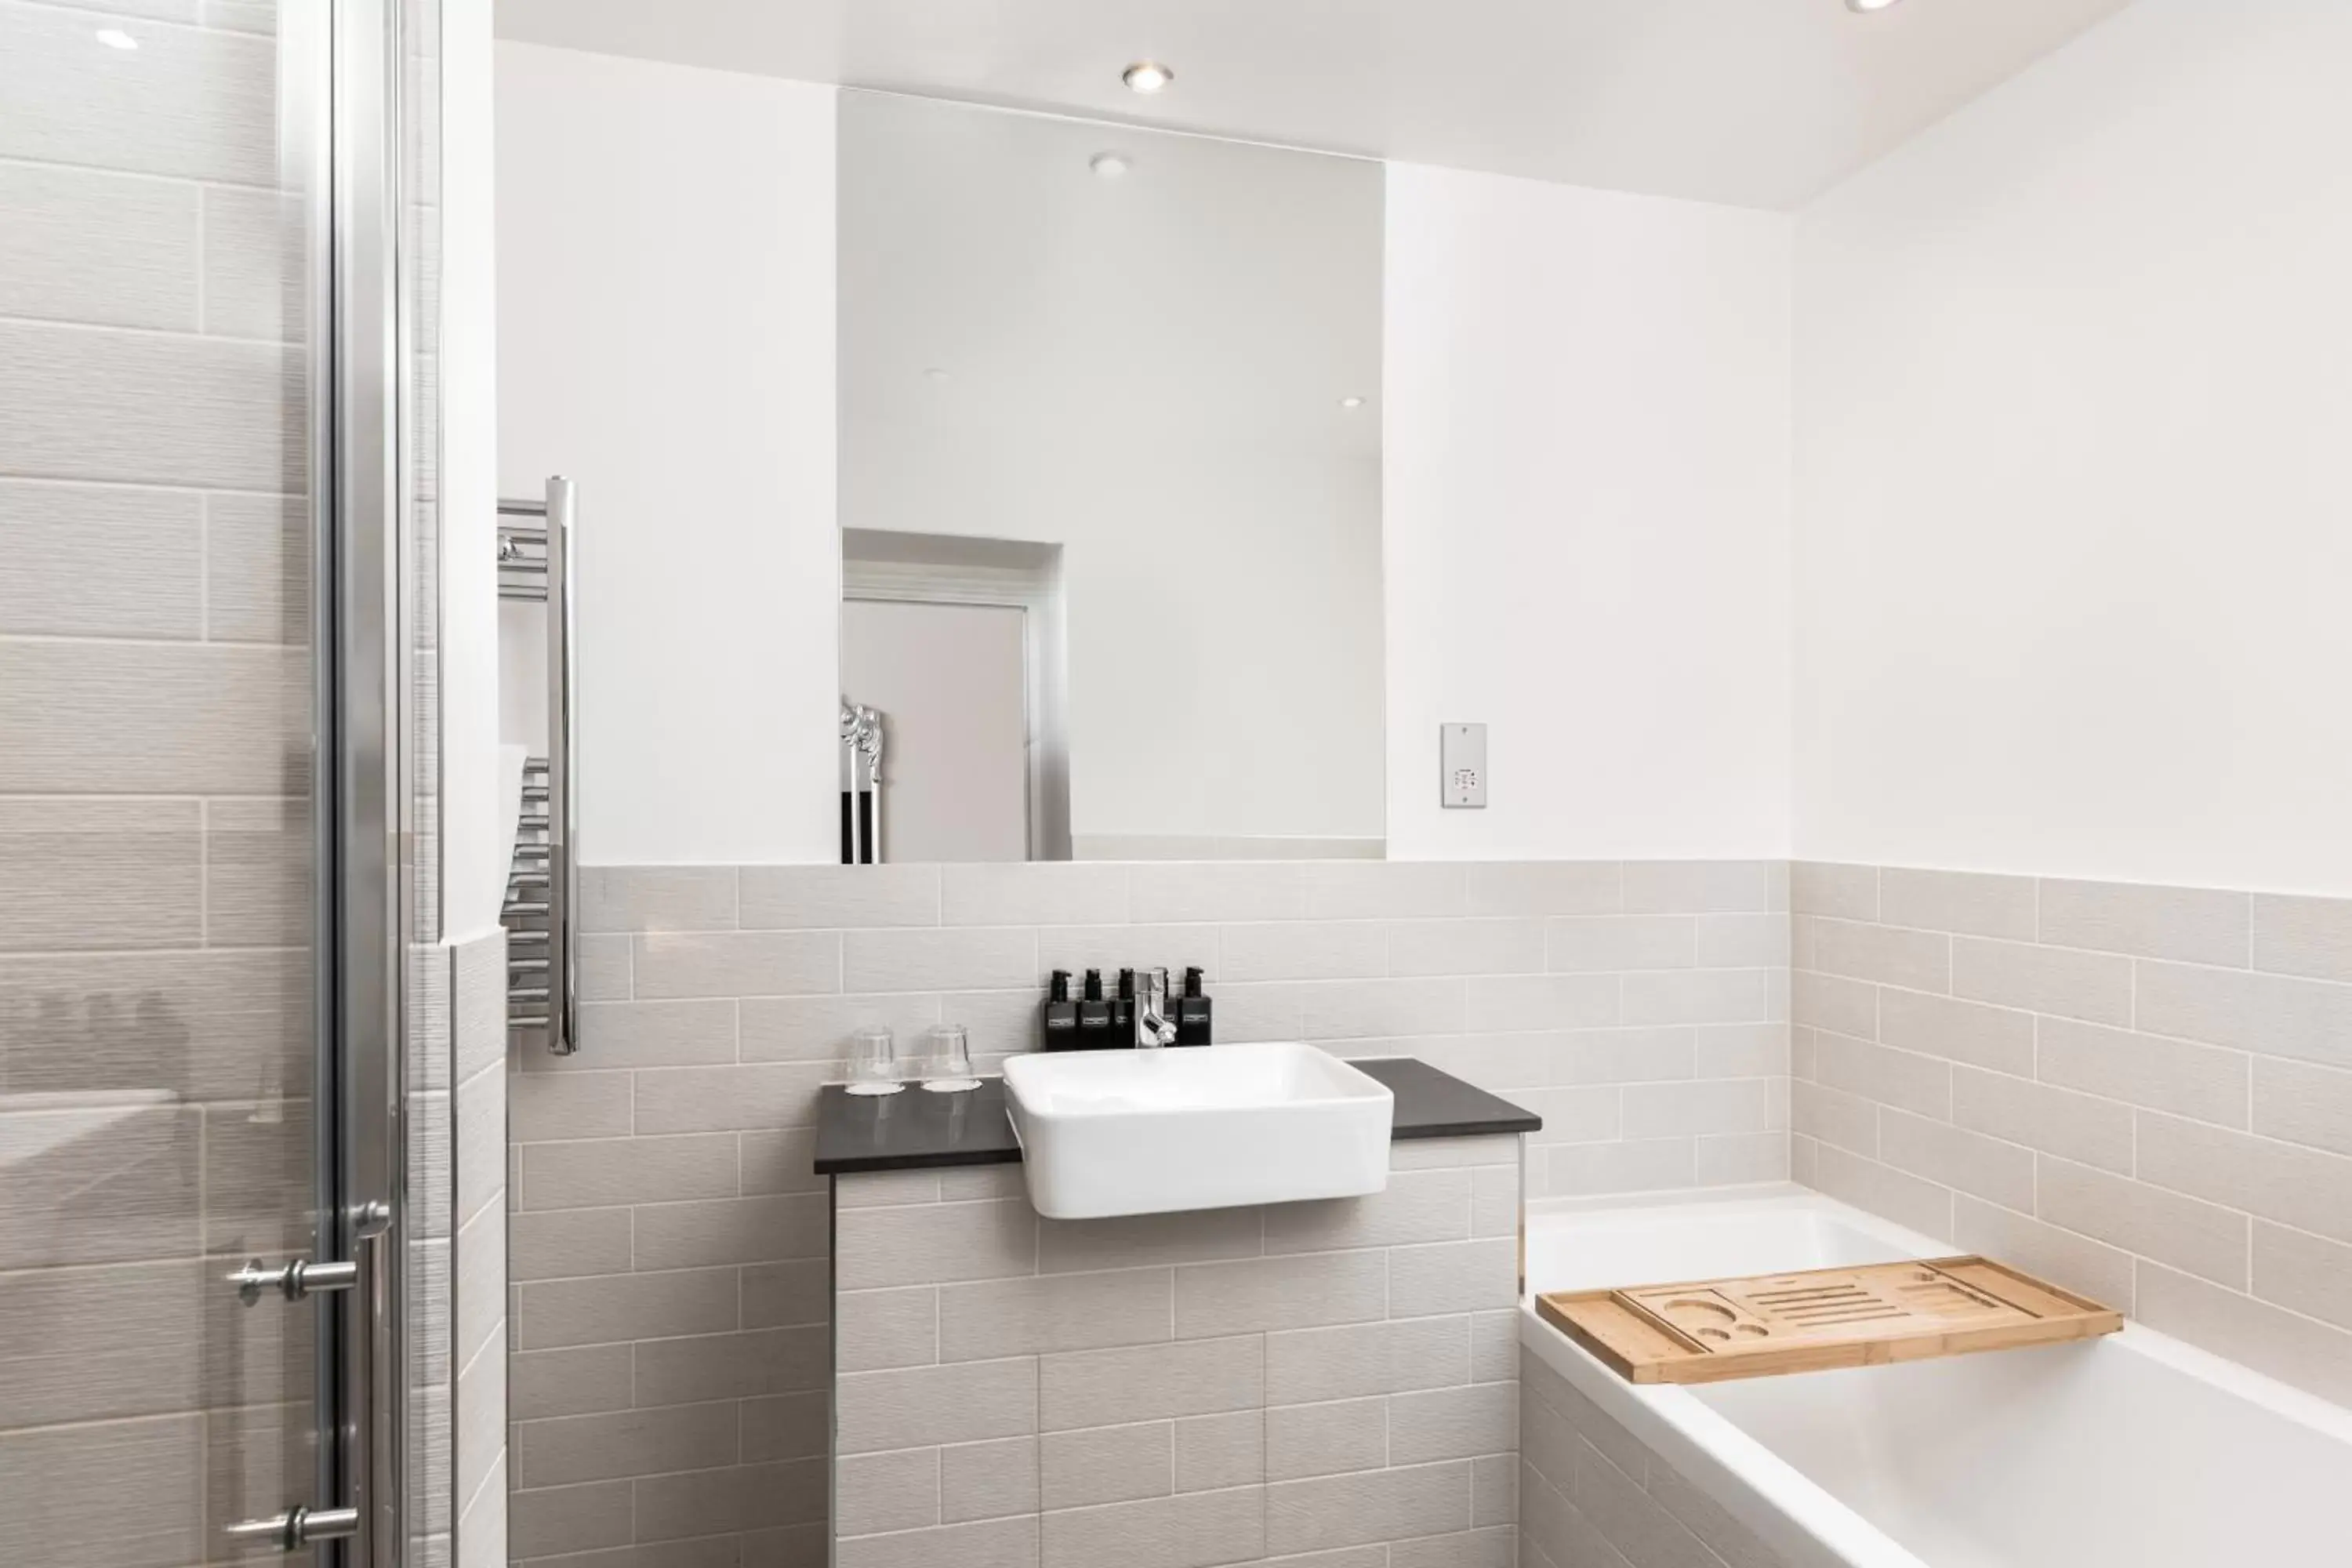 Bathroom in Tulloch Castle Hotel ‘A Bespoke Hotel’